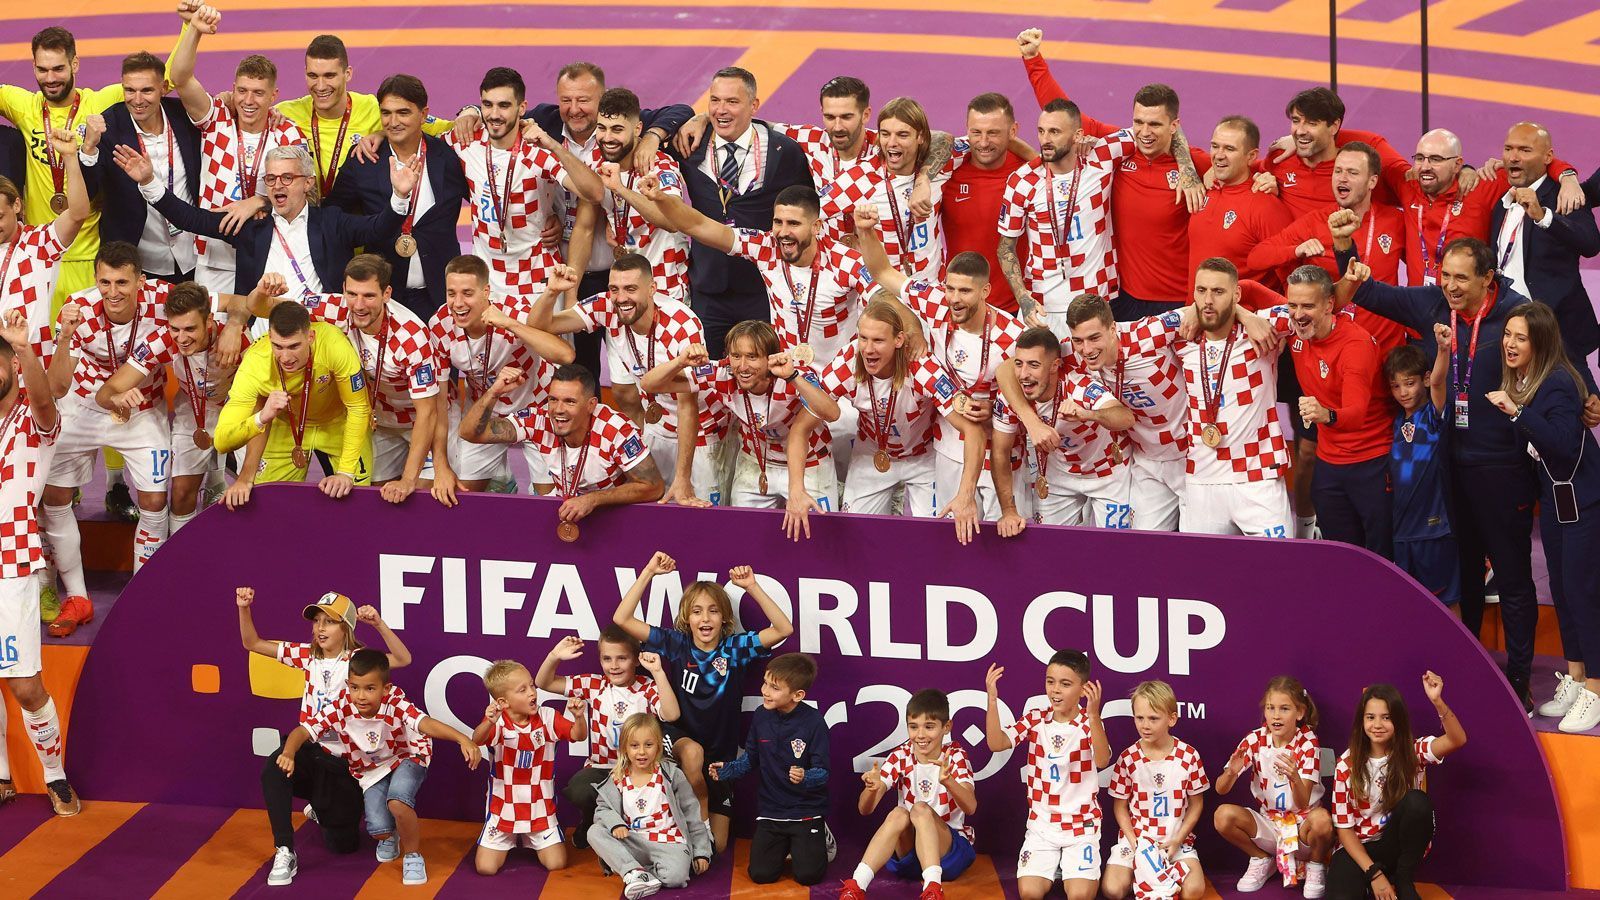 
                <strong>Siegerbild mit Kindern</strong><br>
                Auf der eilig aufgebauten Bühne werden die Bronzemedaillen an die stolzen Kroaten verteilt und dann wird zum Siegerfoto gebeten. Mit dabei auch der Nachwuchs vor der Bande. Wer weiß: Vielleicht mischt ja der eine oder die andere von den Kleinen irgendwann einmal auch auf der großen WM-Bühne mit.
              